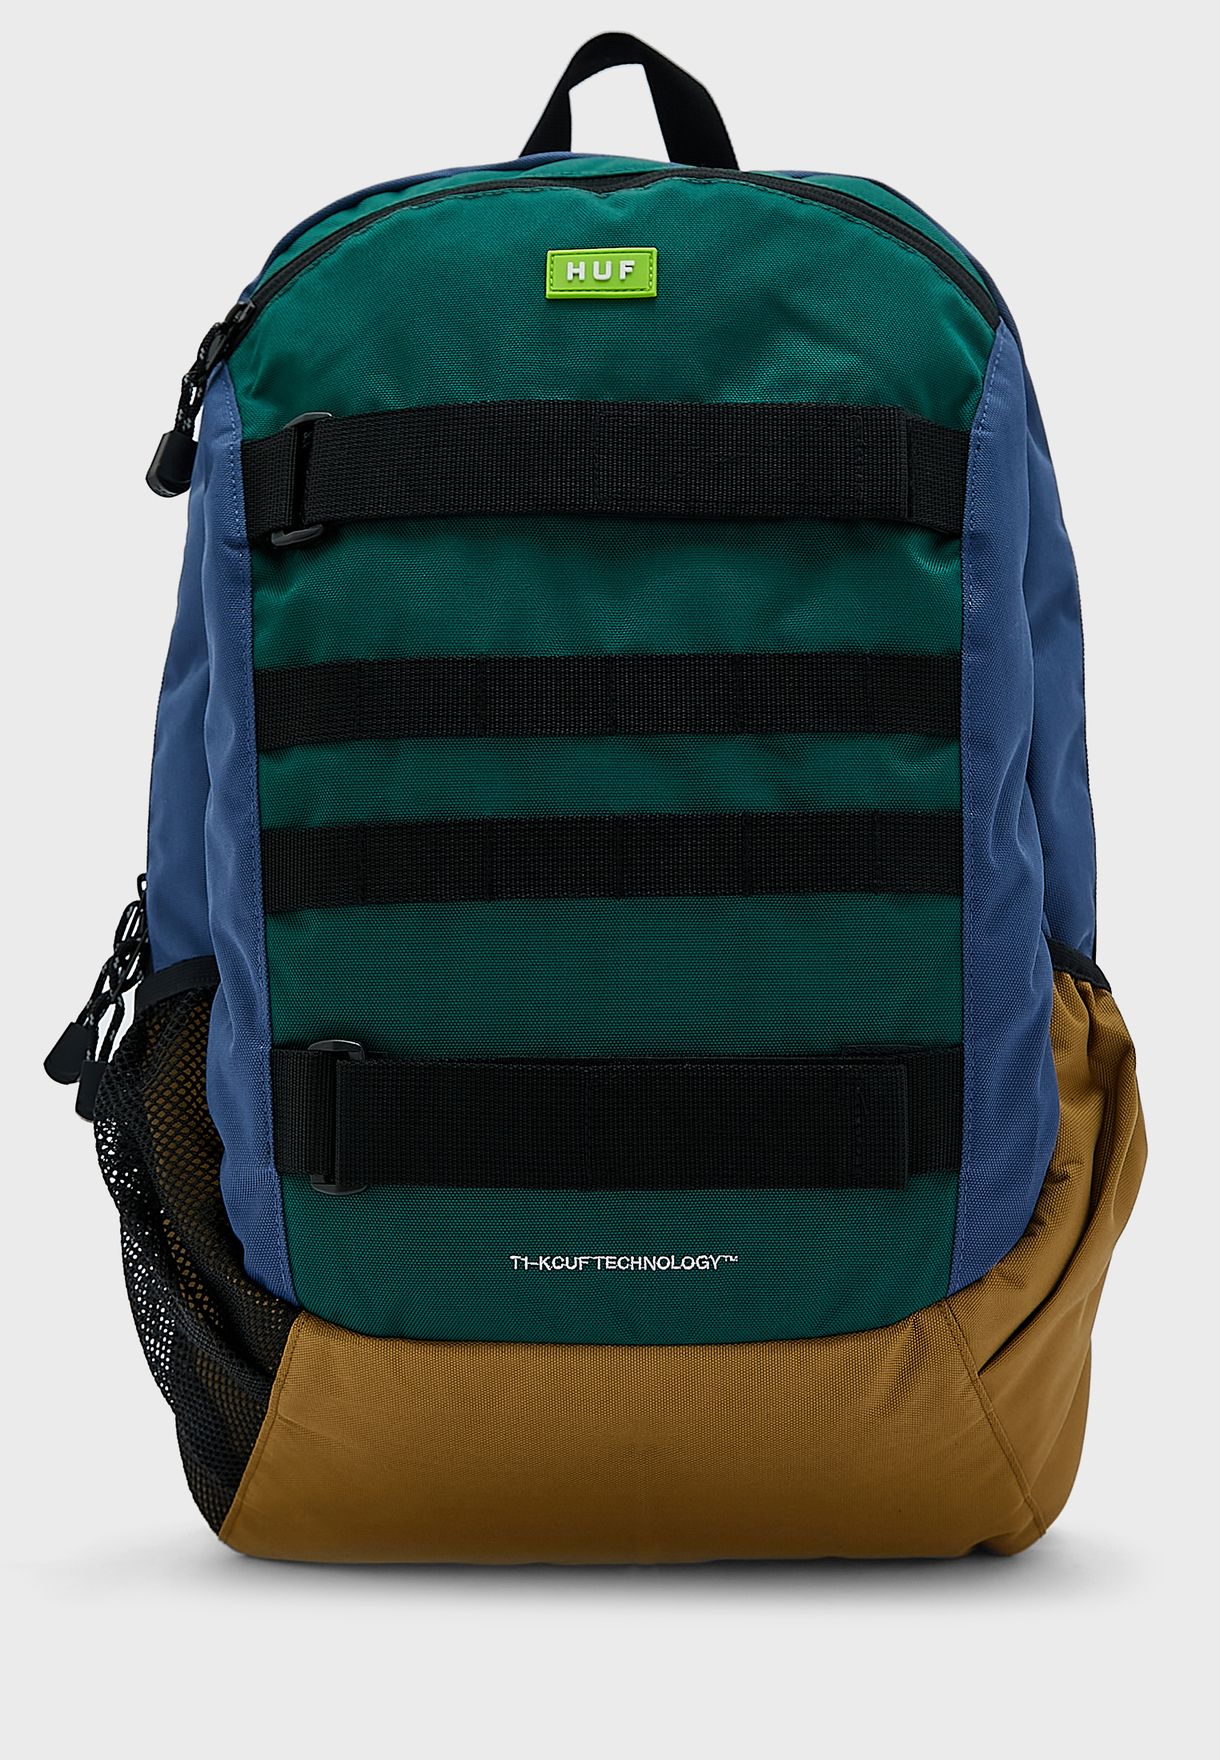 Mission Backpack